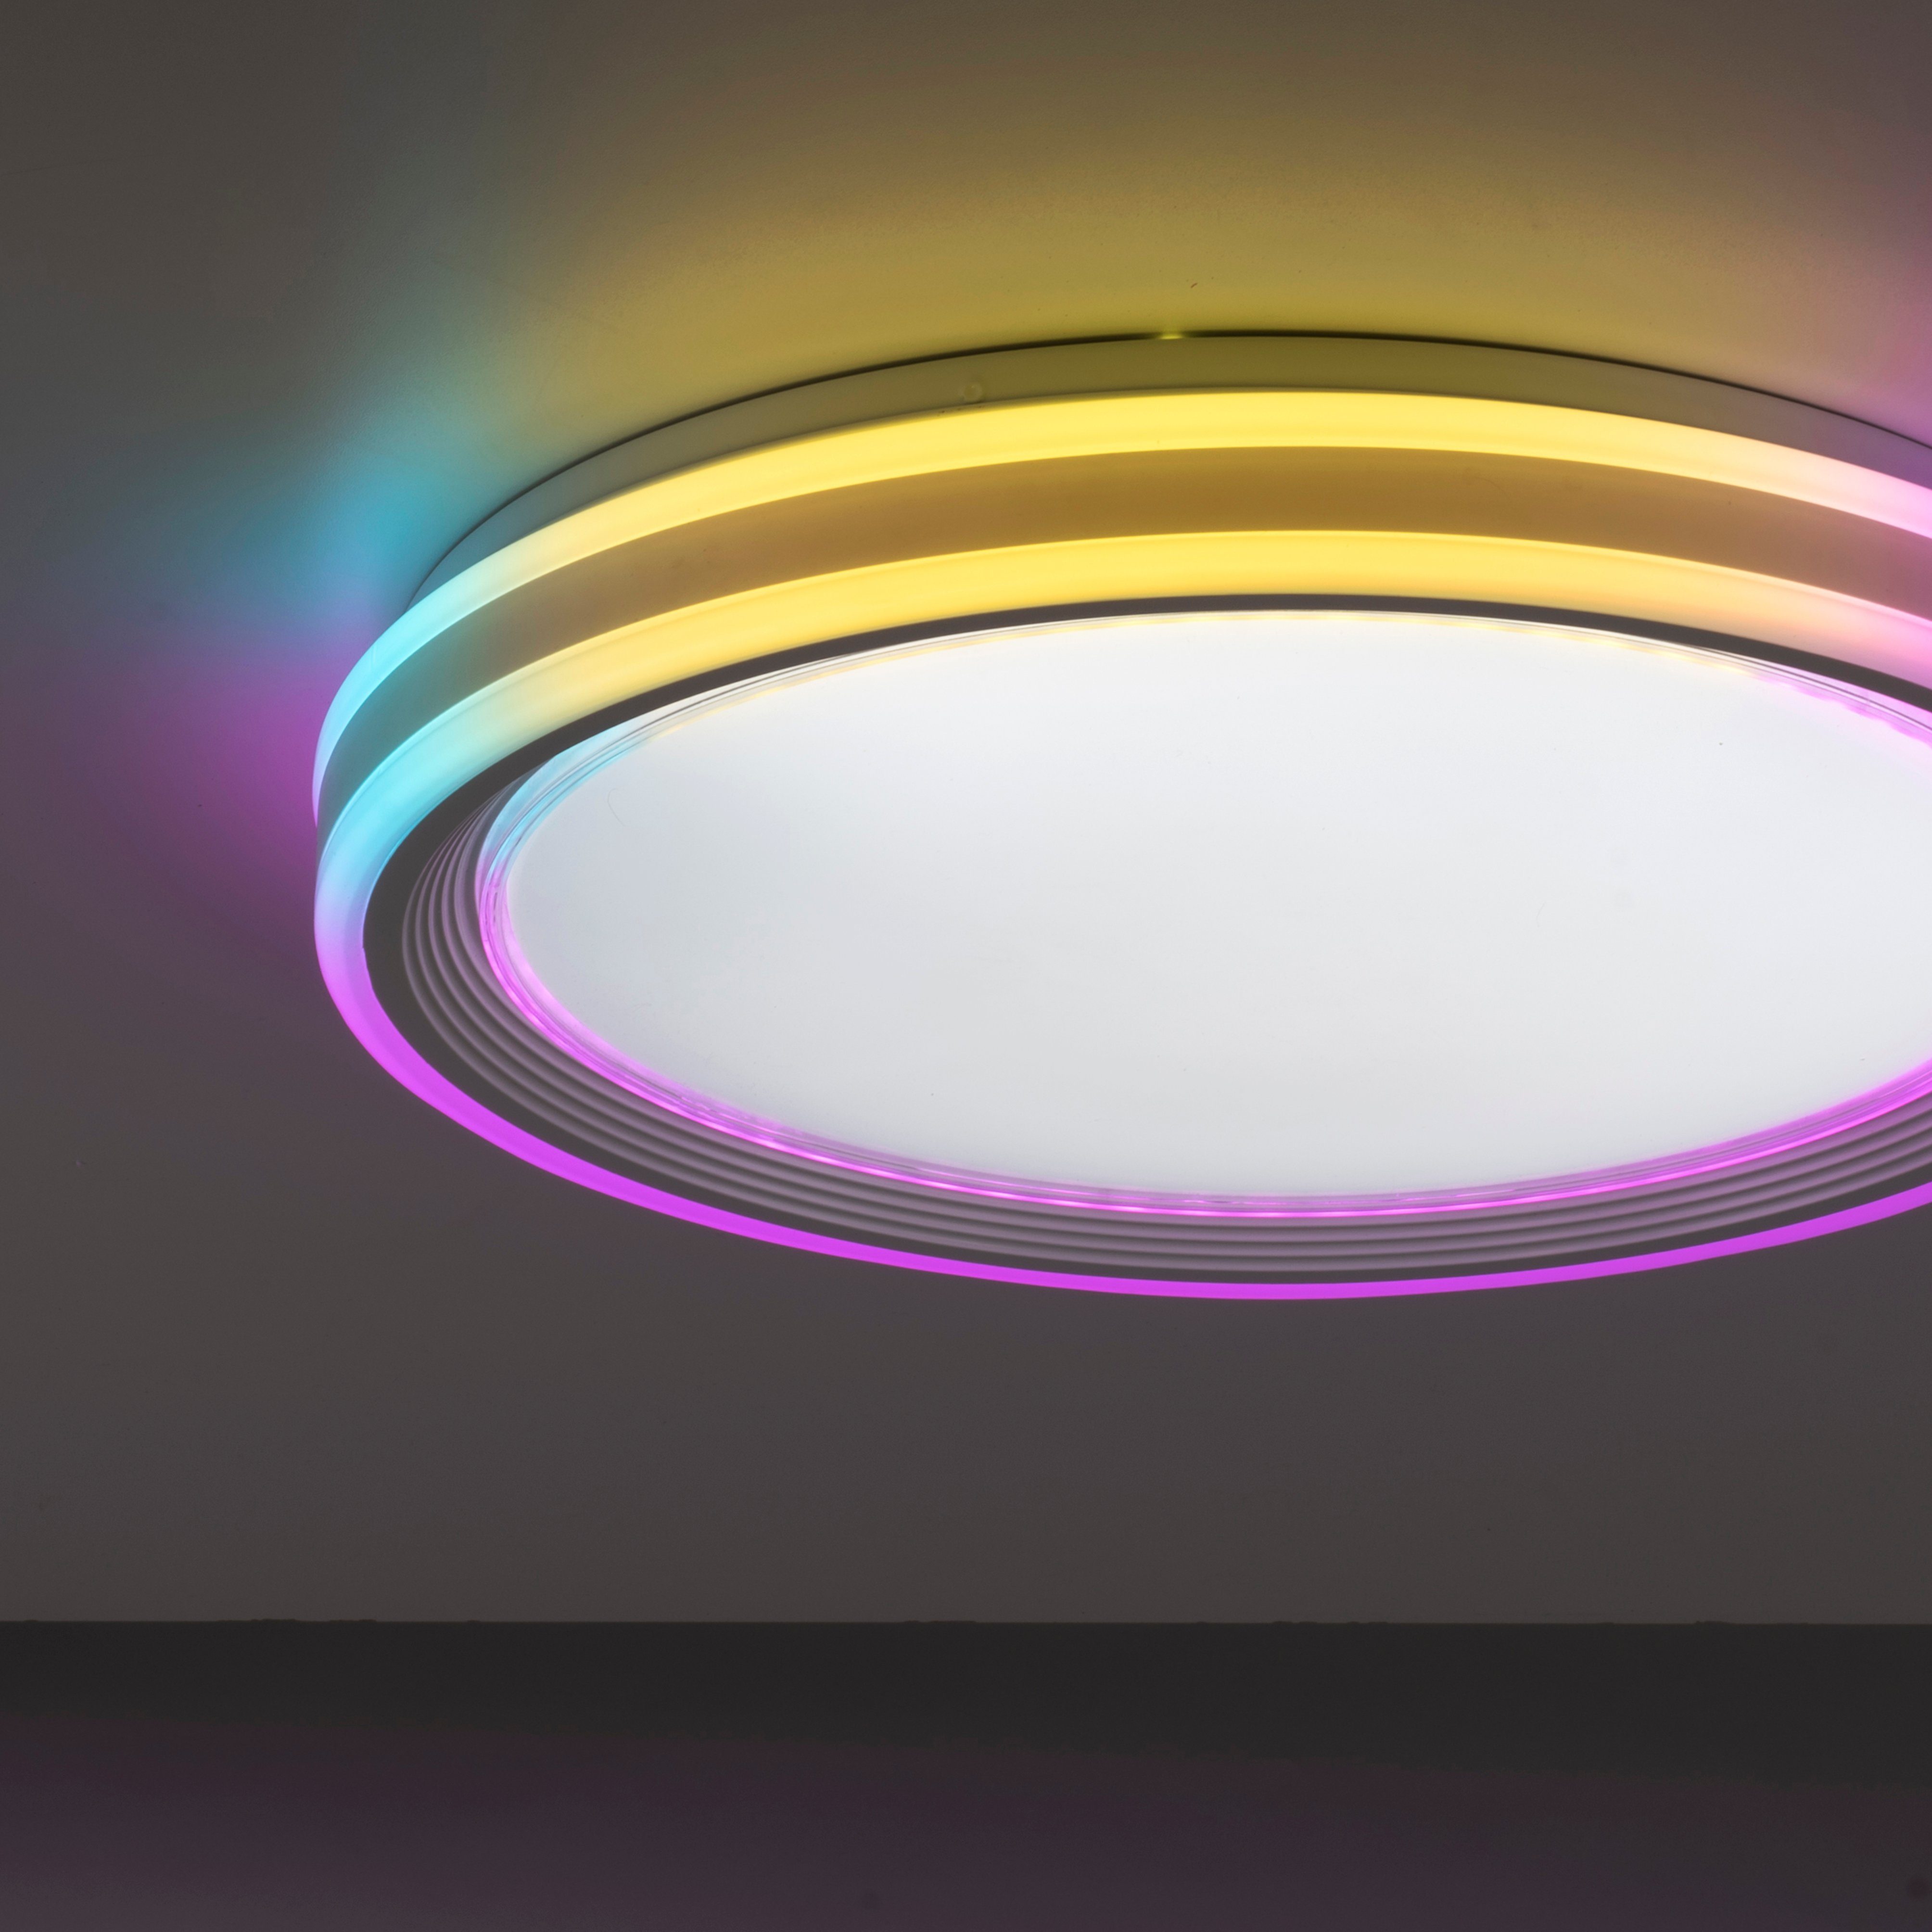 Leuchten Direkt Deckenleuchte SPHERIC, LED, warmweiß über fest Infrarot Fernbedienung, dimmbar RGB-Rainbow, - CCT LED kaltweiß, integriert, - inkl